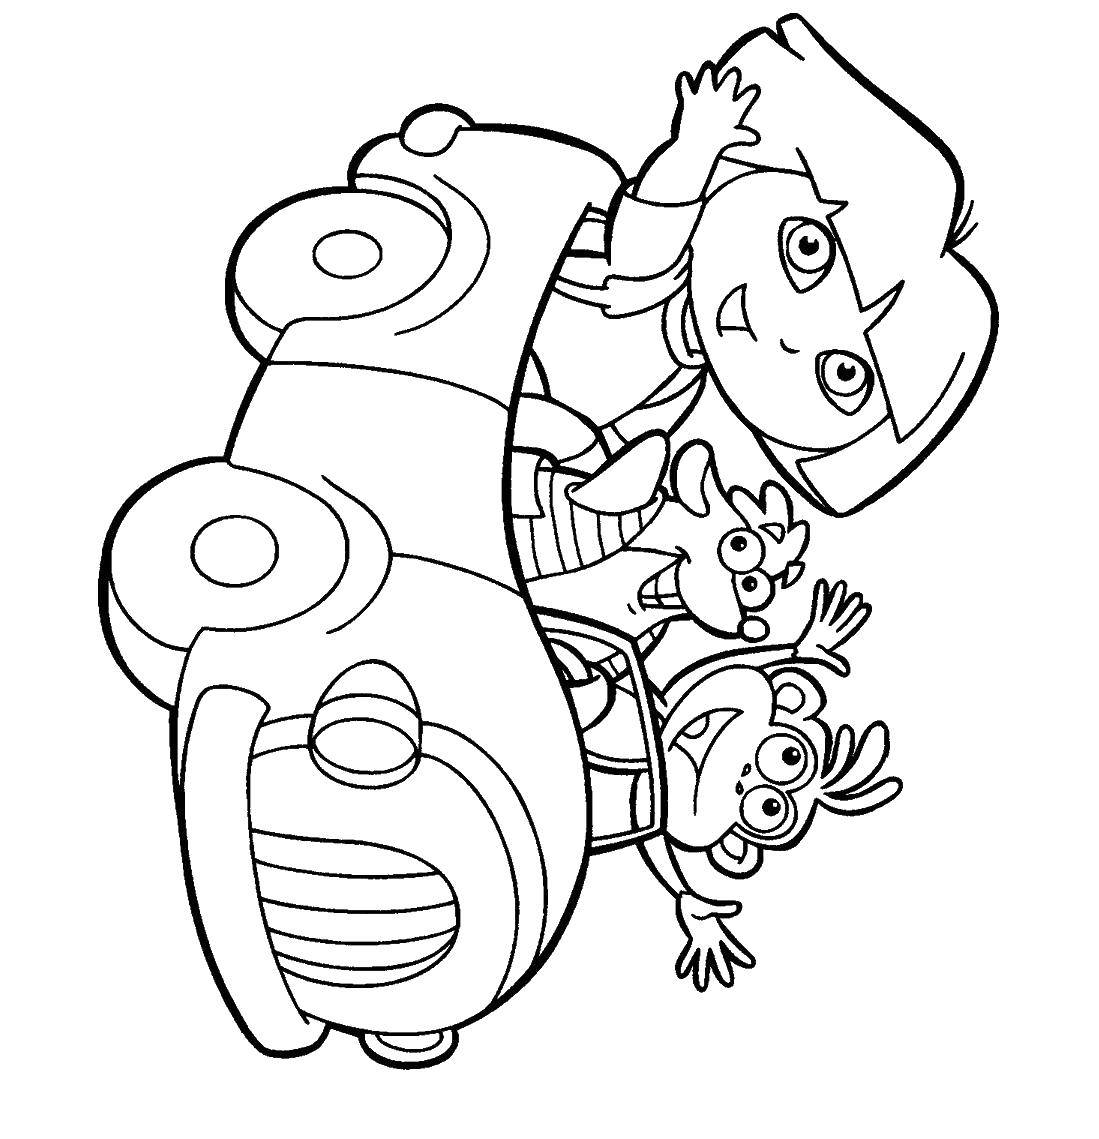 Раскраска с персонажем из мультфильма Даша Путешественница и ее другом Башмачком (Башмачок)